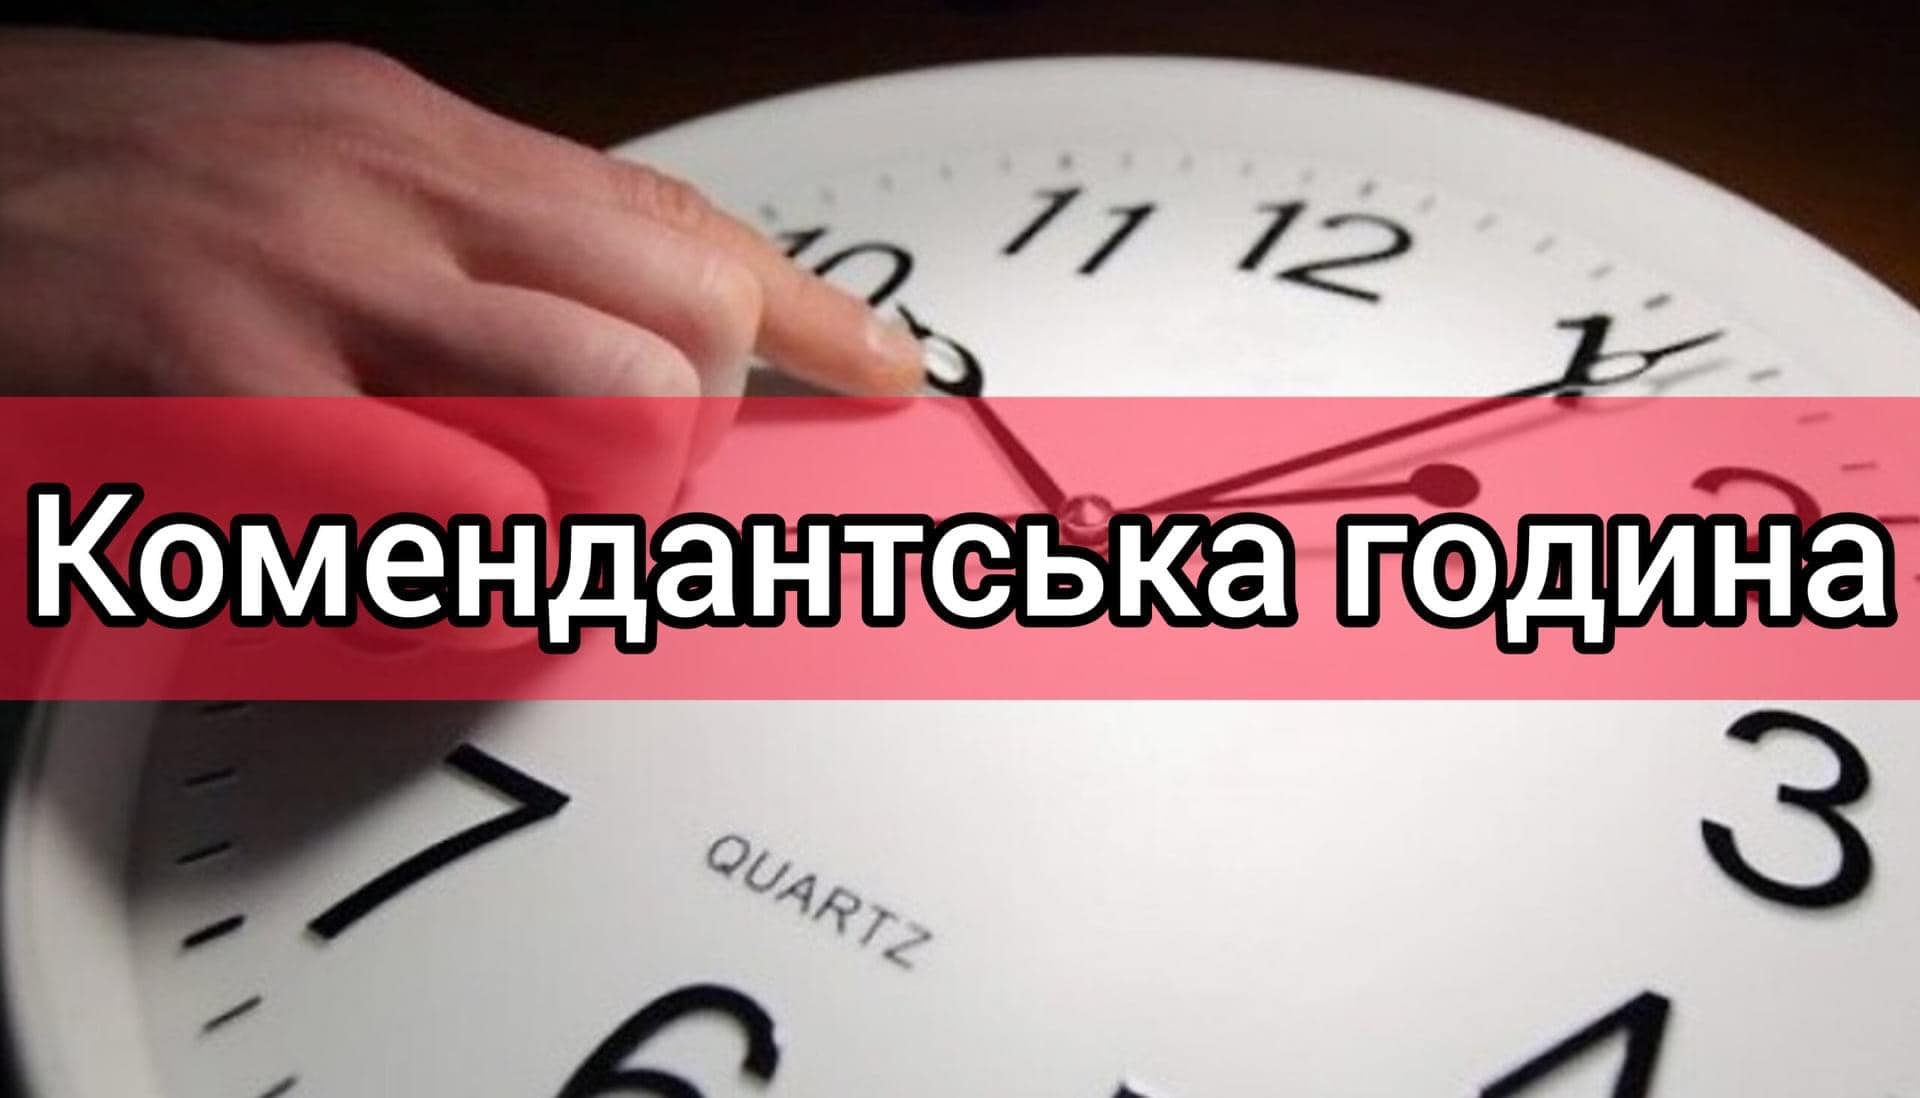 З 1 грудня комендантська година на Миколаївщині, окрім декількох громад, буде з 00:00 до 05:00 (ДОКУМЕНТ) 3